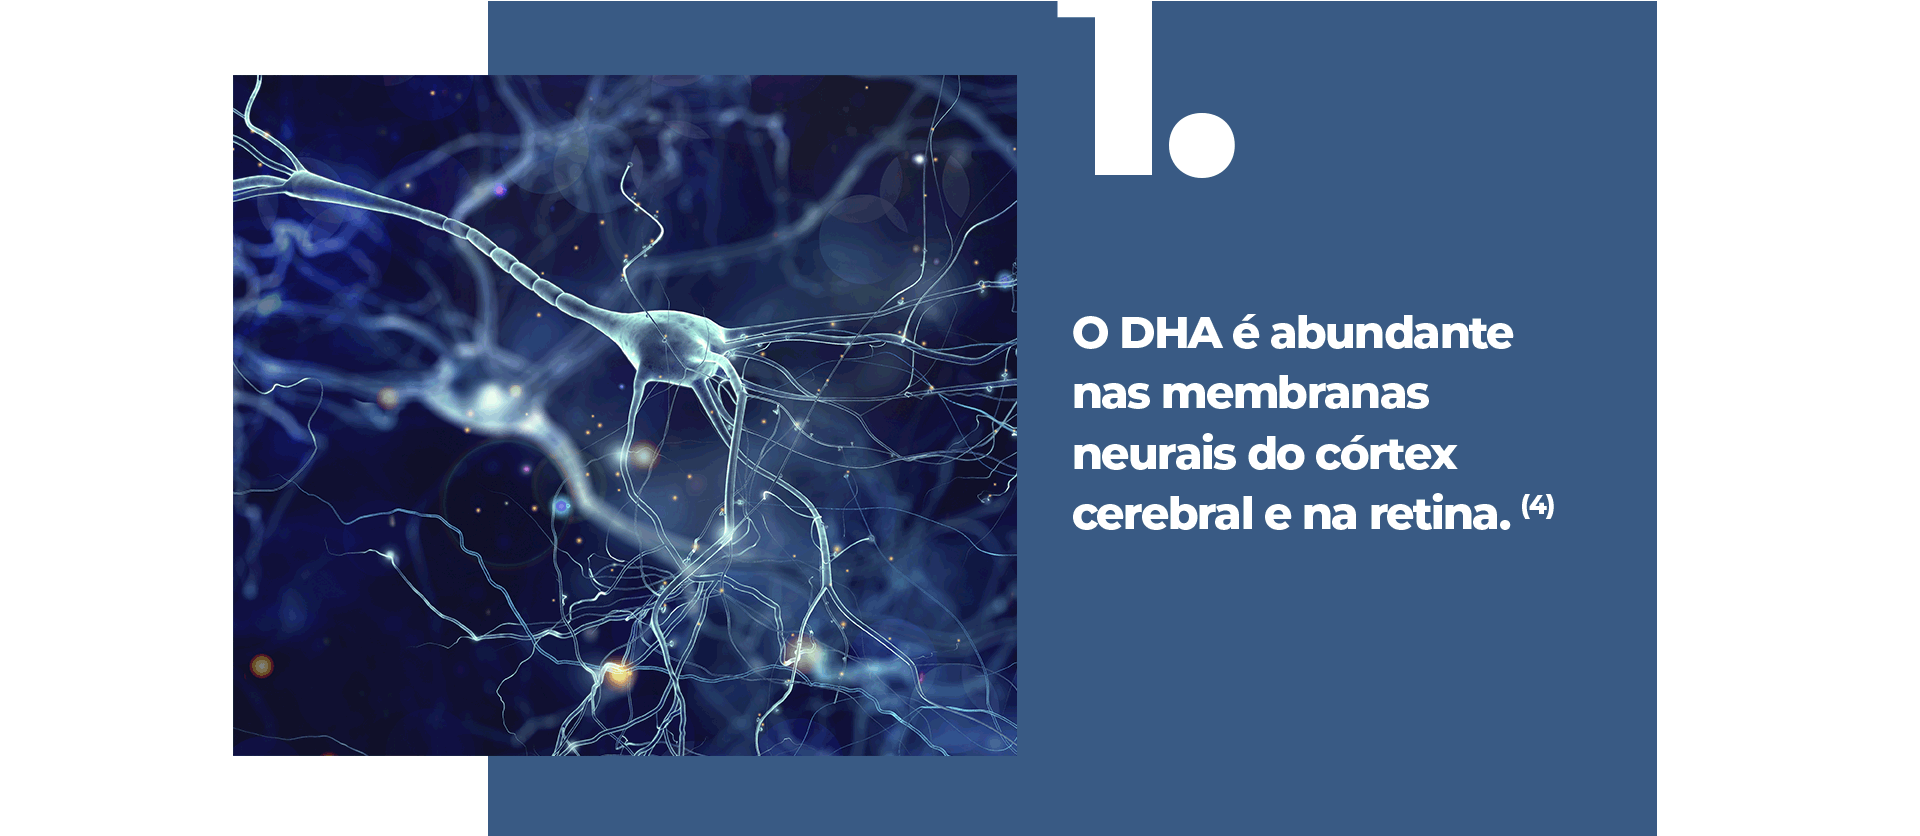 O DHA é abundante nas membranas neurais do córtex cerebral e na retina.